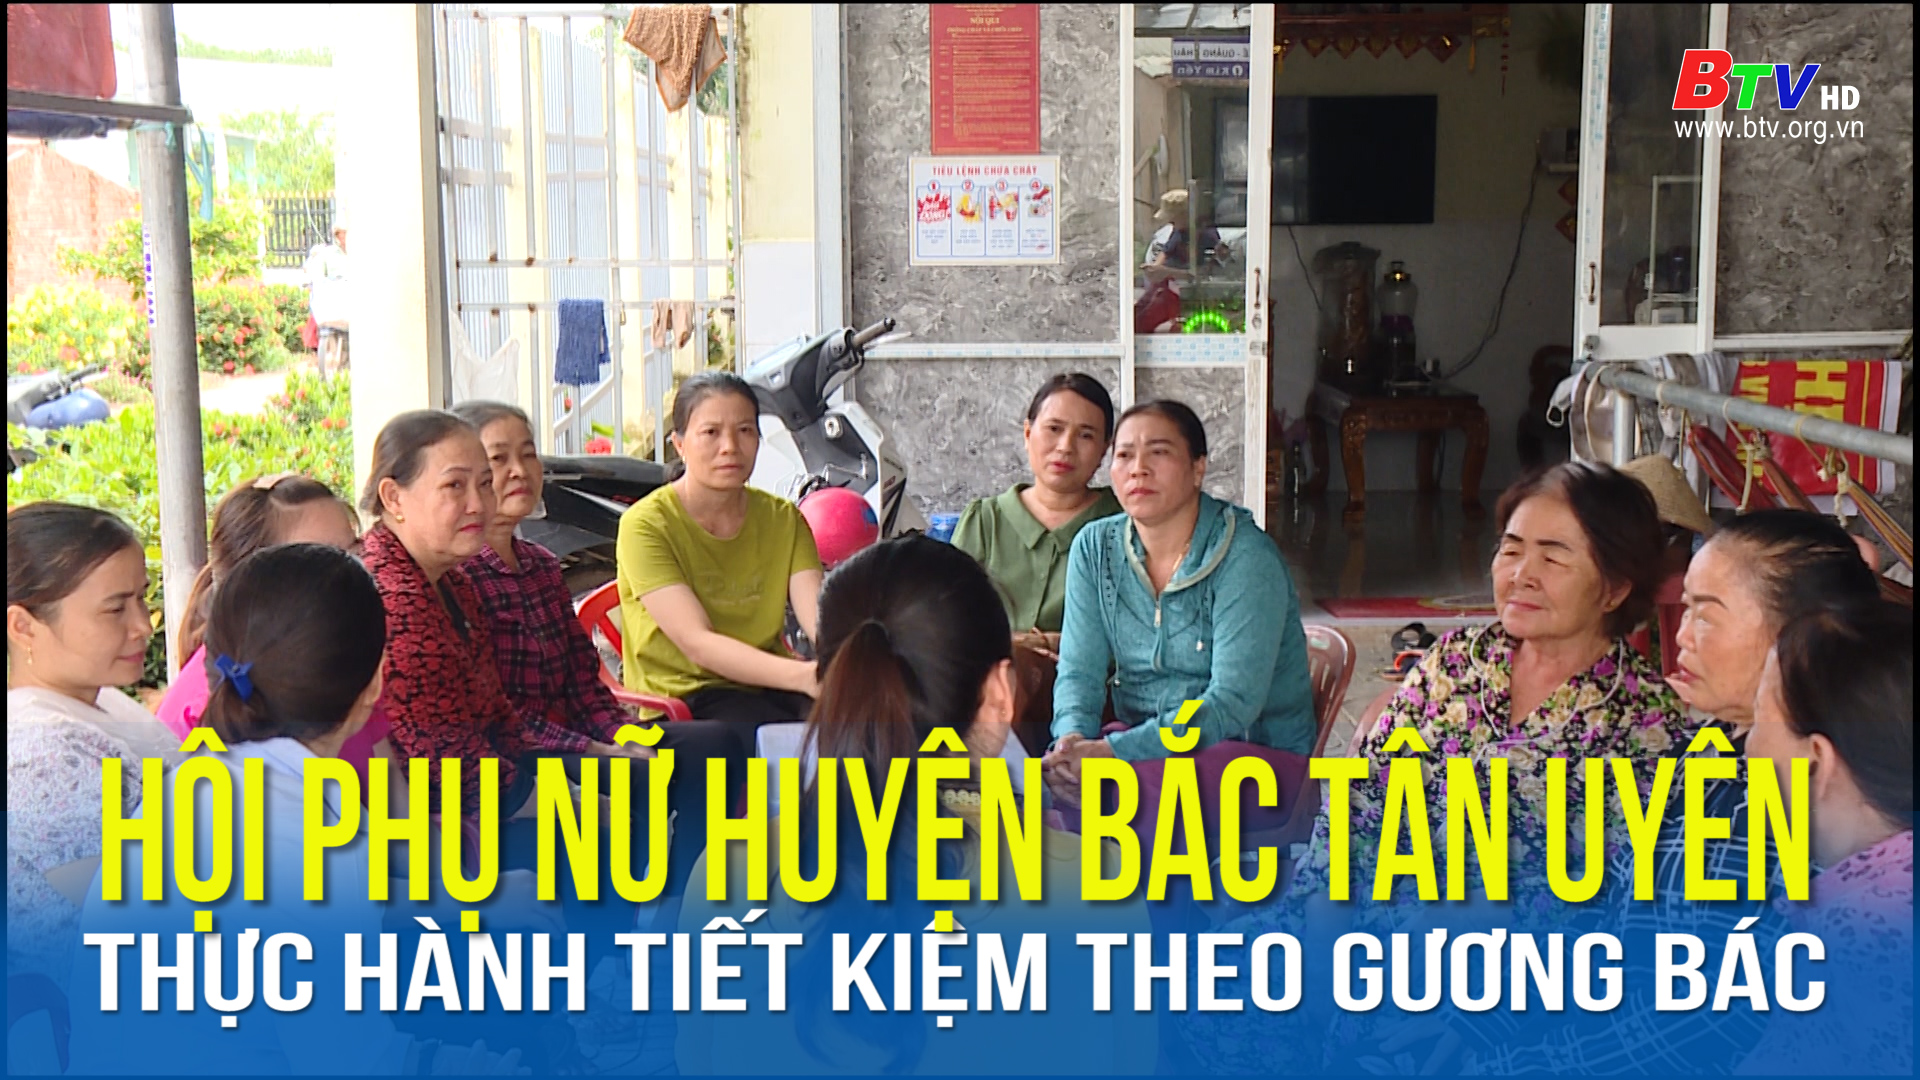 Hội phụ nữ huyện Bắc Tân Uyên thực hành tiết kiệm theo gương Bác